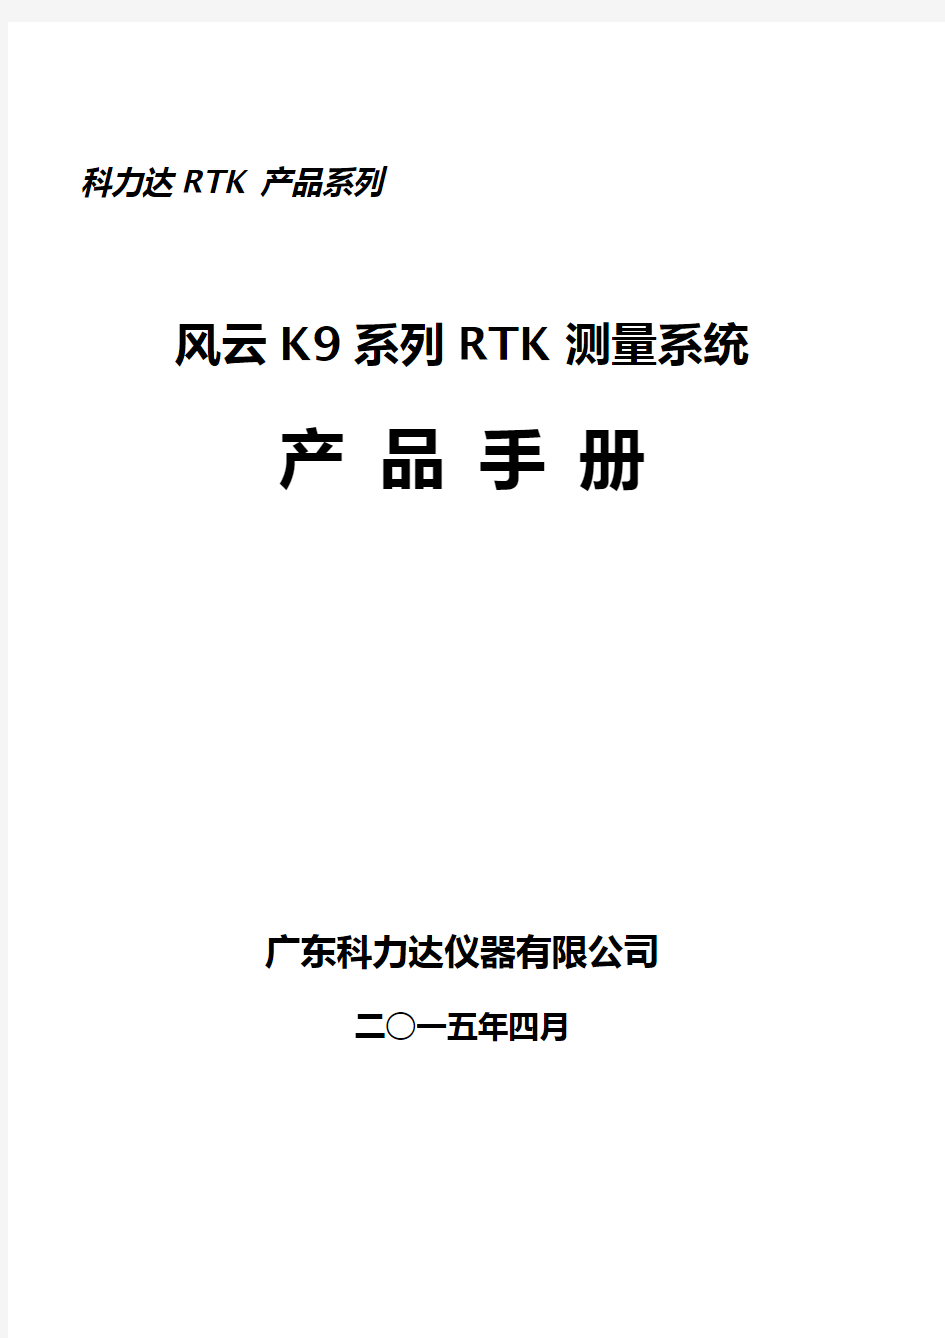 科力达风云K9系列RTK产品手册